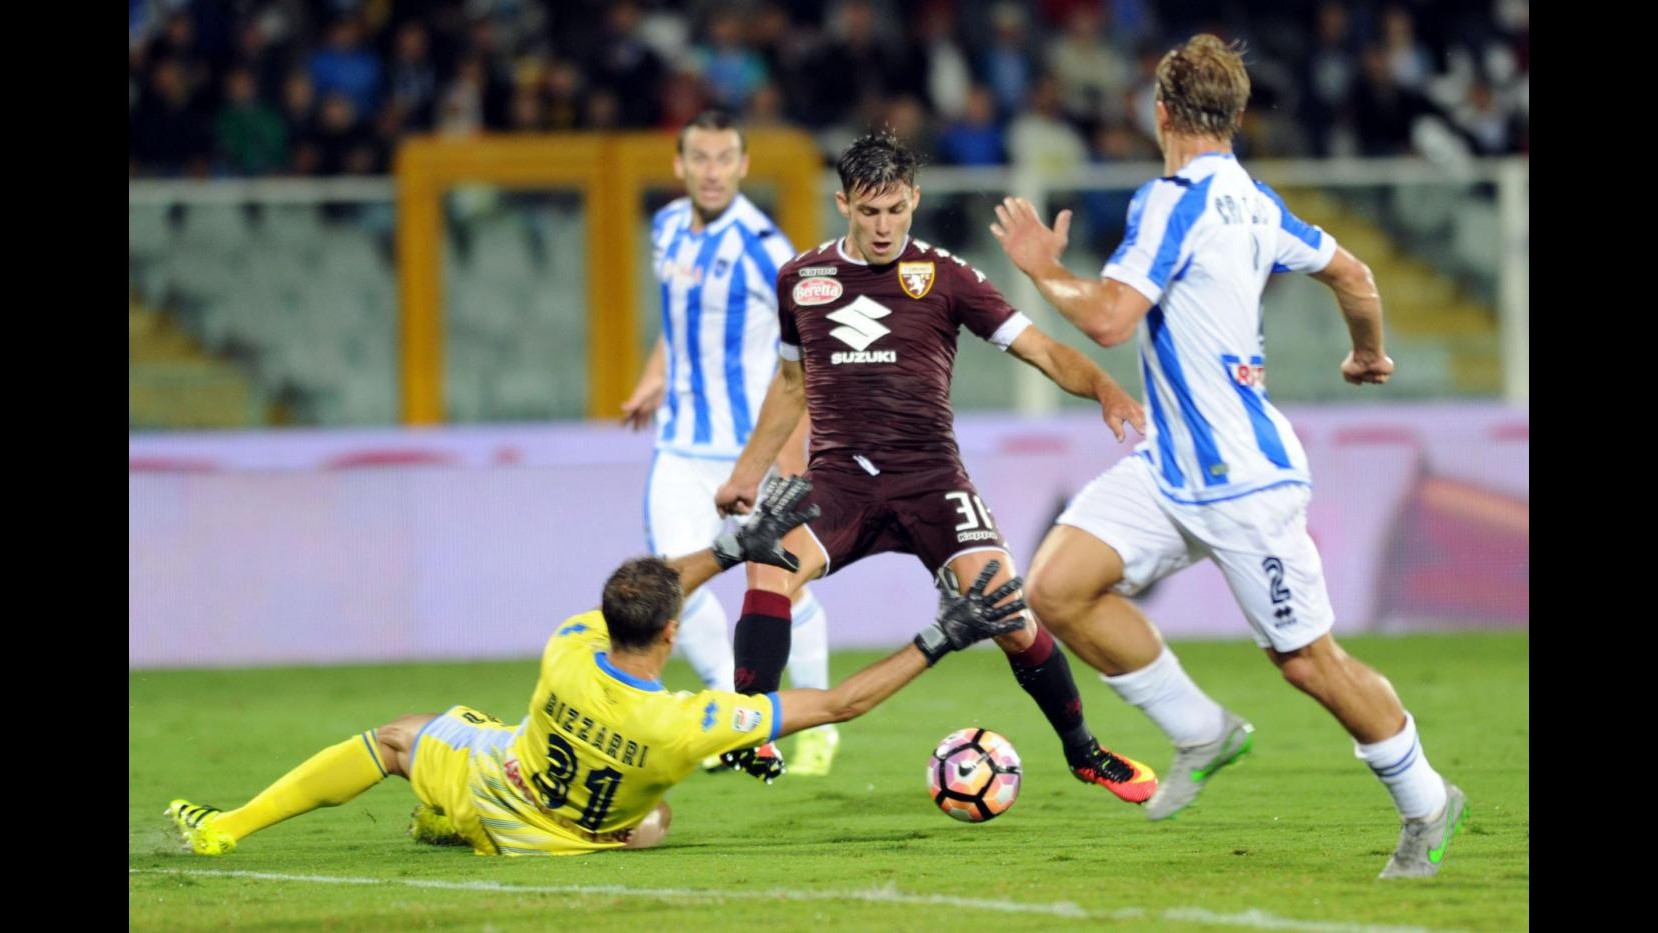 FOTO Il Torino in nove non va oltre lo 0-0 a Pescara